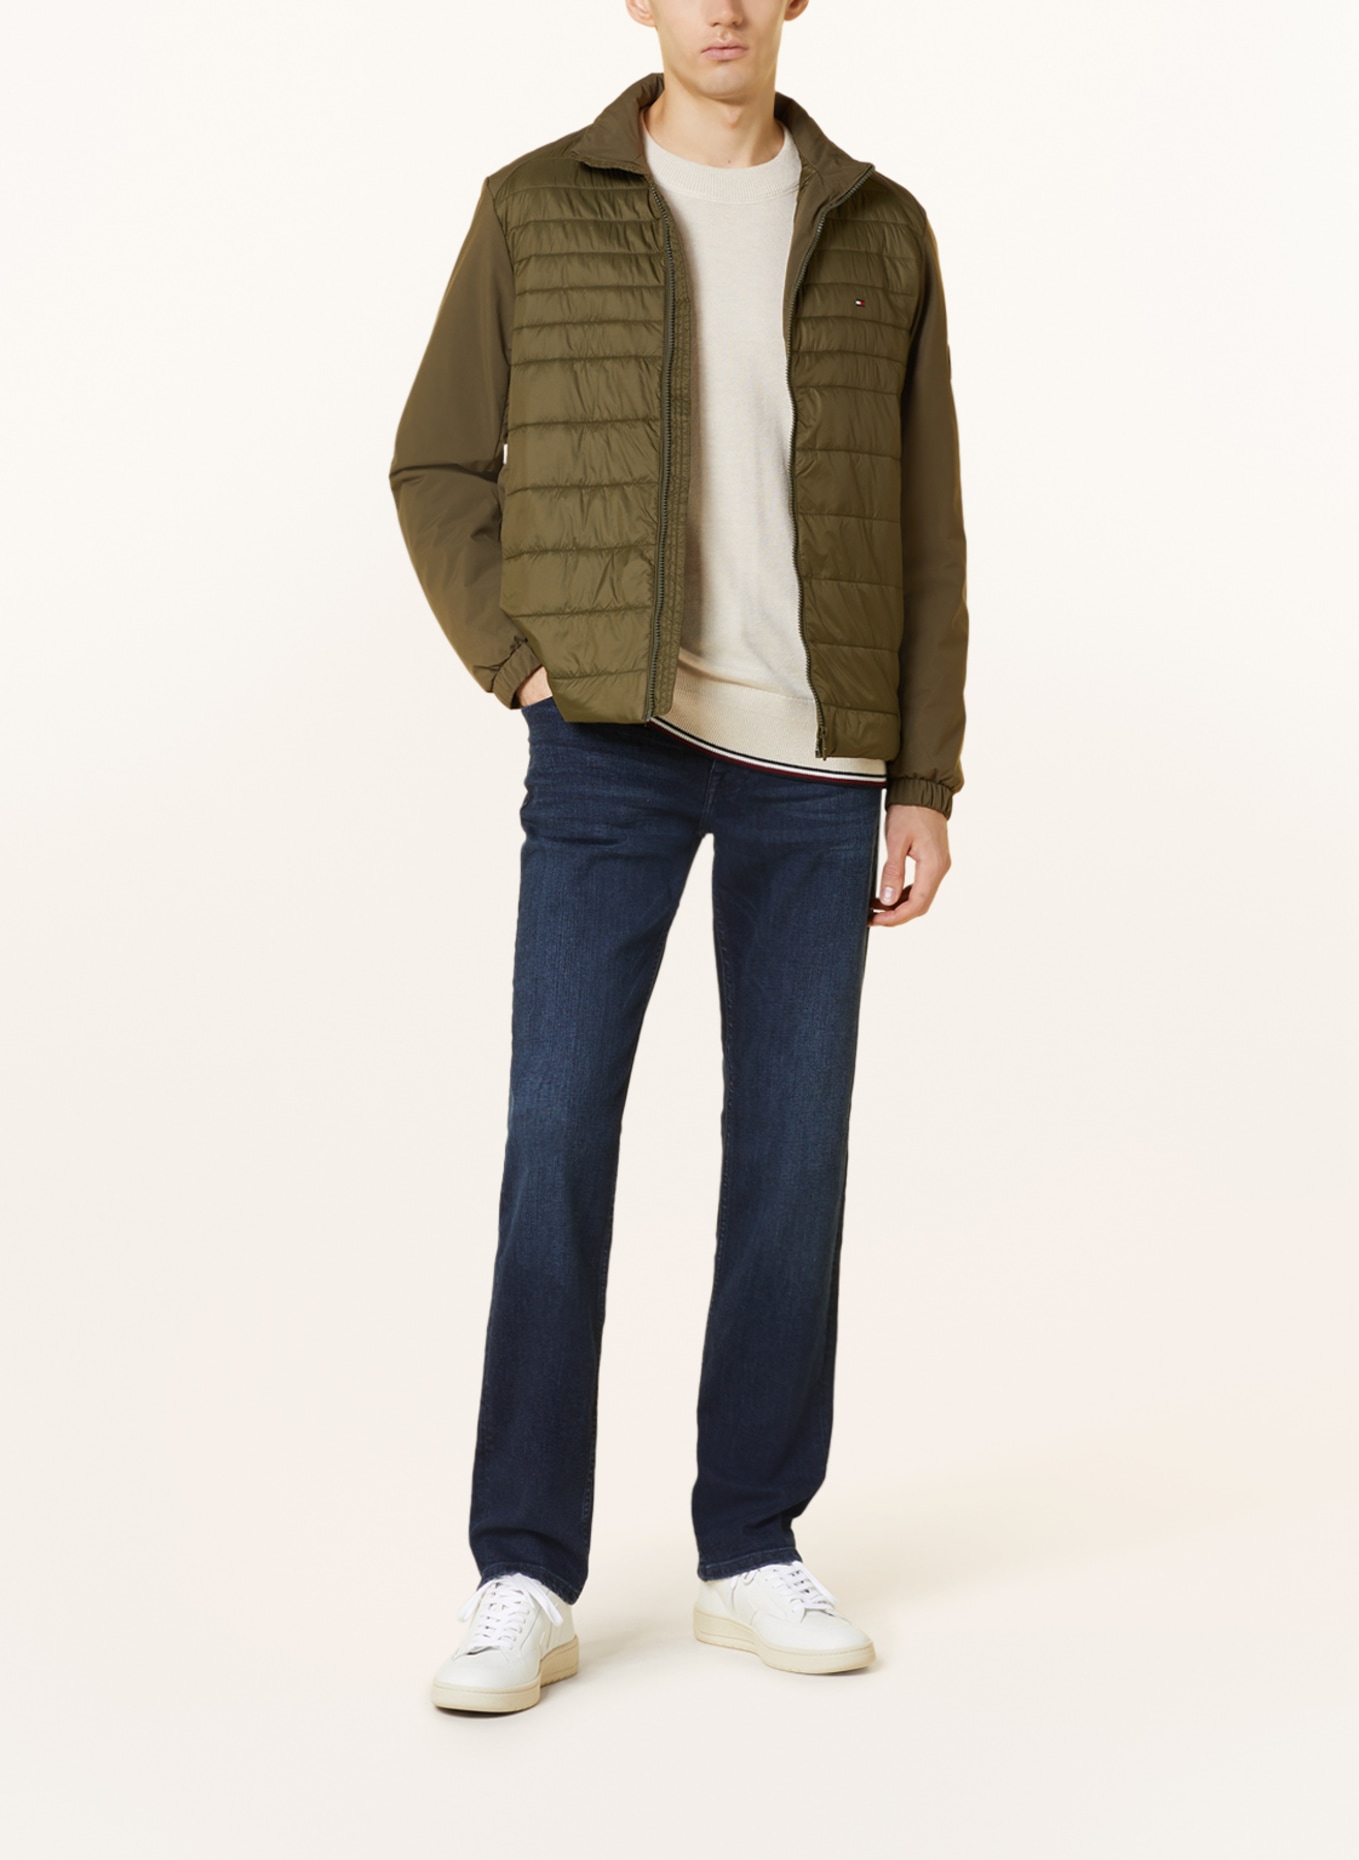 TOMMY HILFIGER Quilted jacket, Color: OLIVE (Image 2)